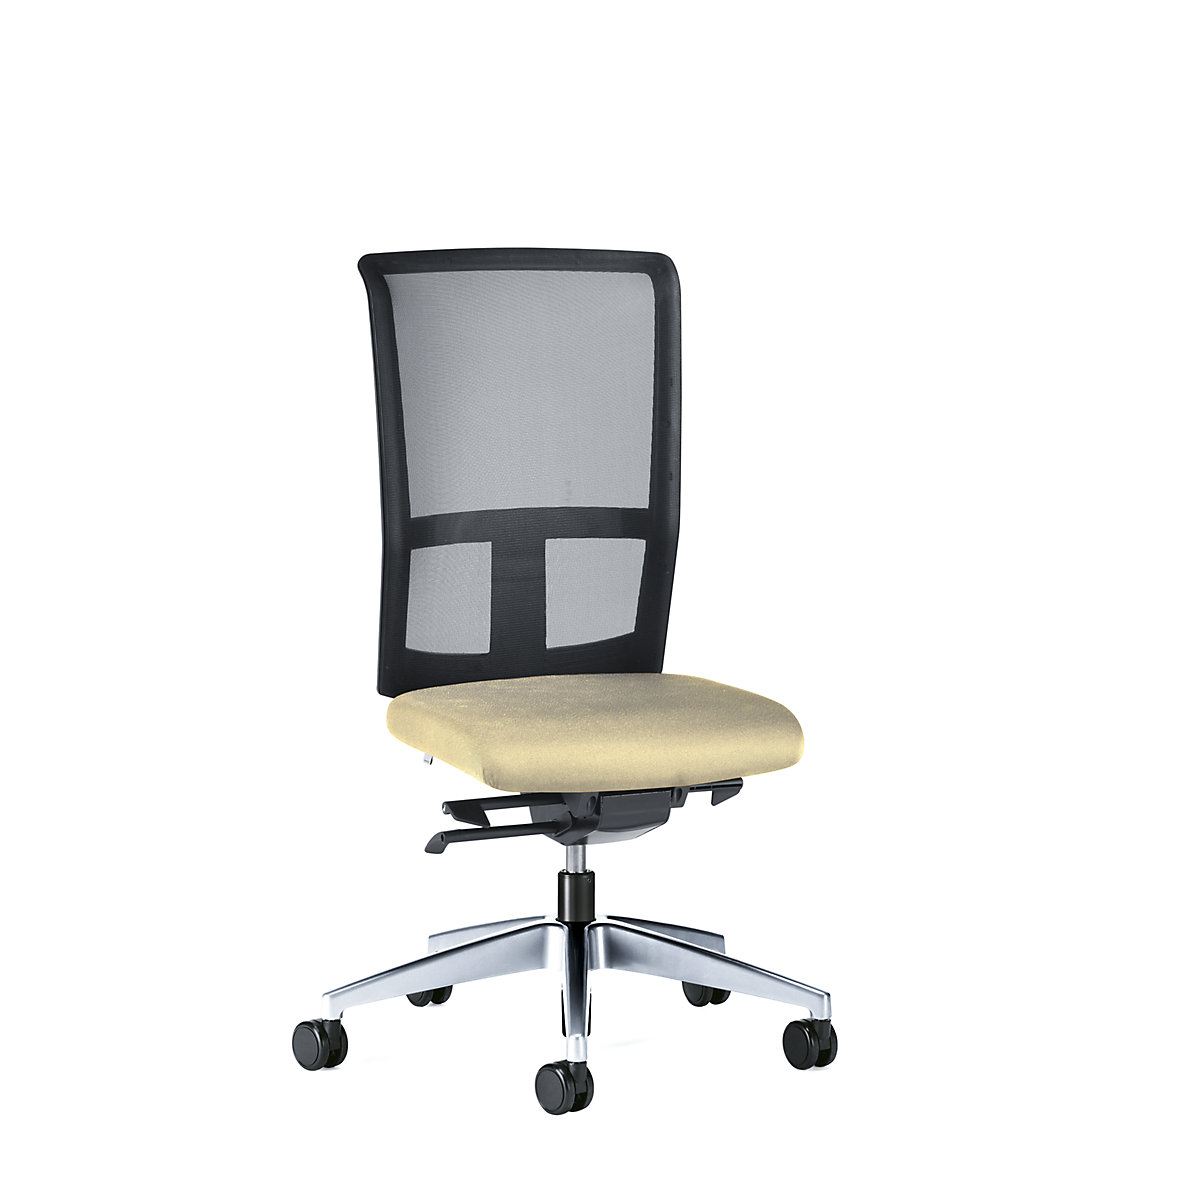 Bürodrehstuhl GOAL AIR, Rückenlehnenhöhe 545 mm interstuhl, Gestell poliert, mit weichen Rollen, beige, Sitztiefe 410 mm